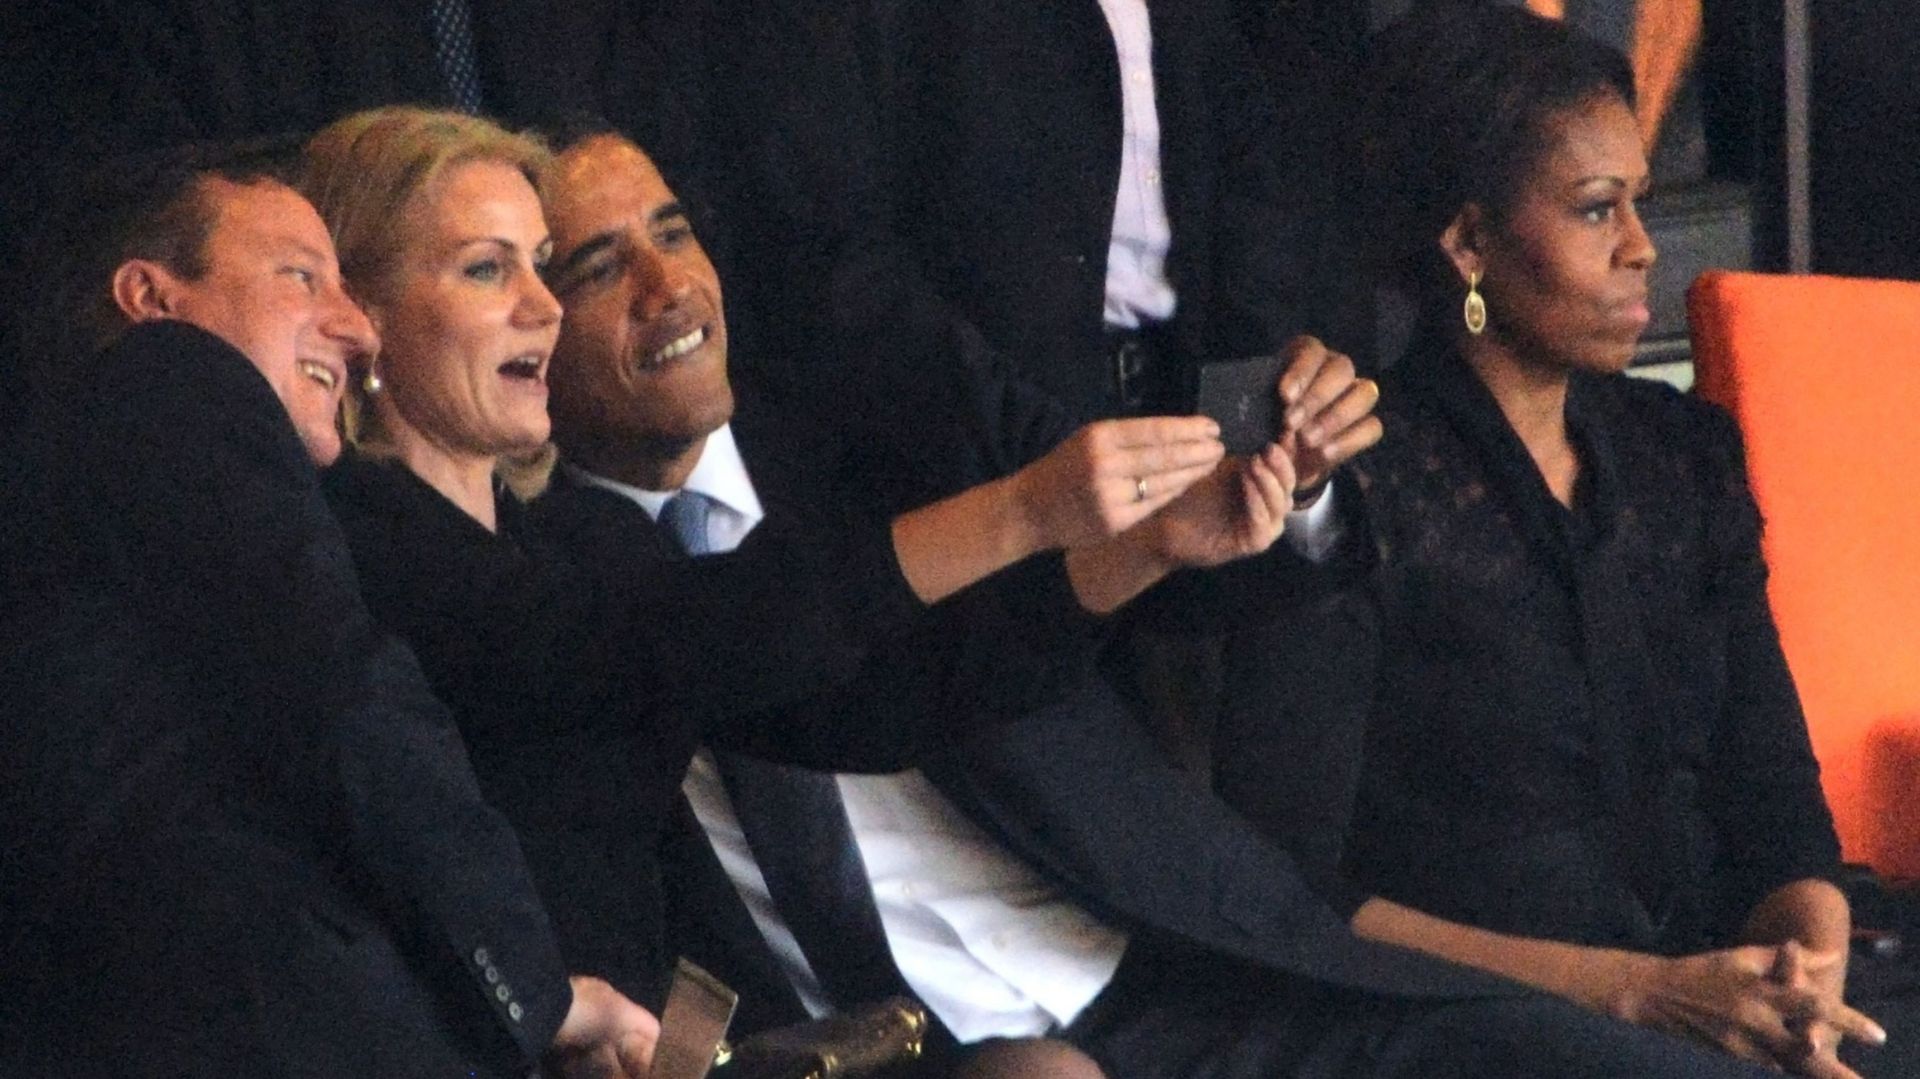 Le "selfie" de Barack Obama, Helle Thorning-Schmidt et David Cameron